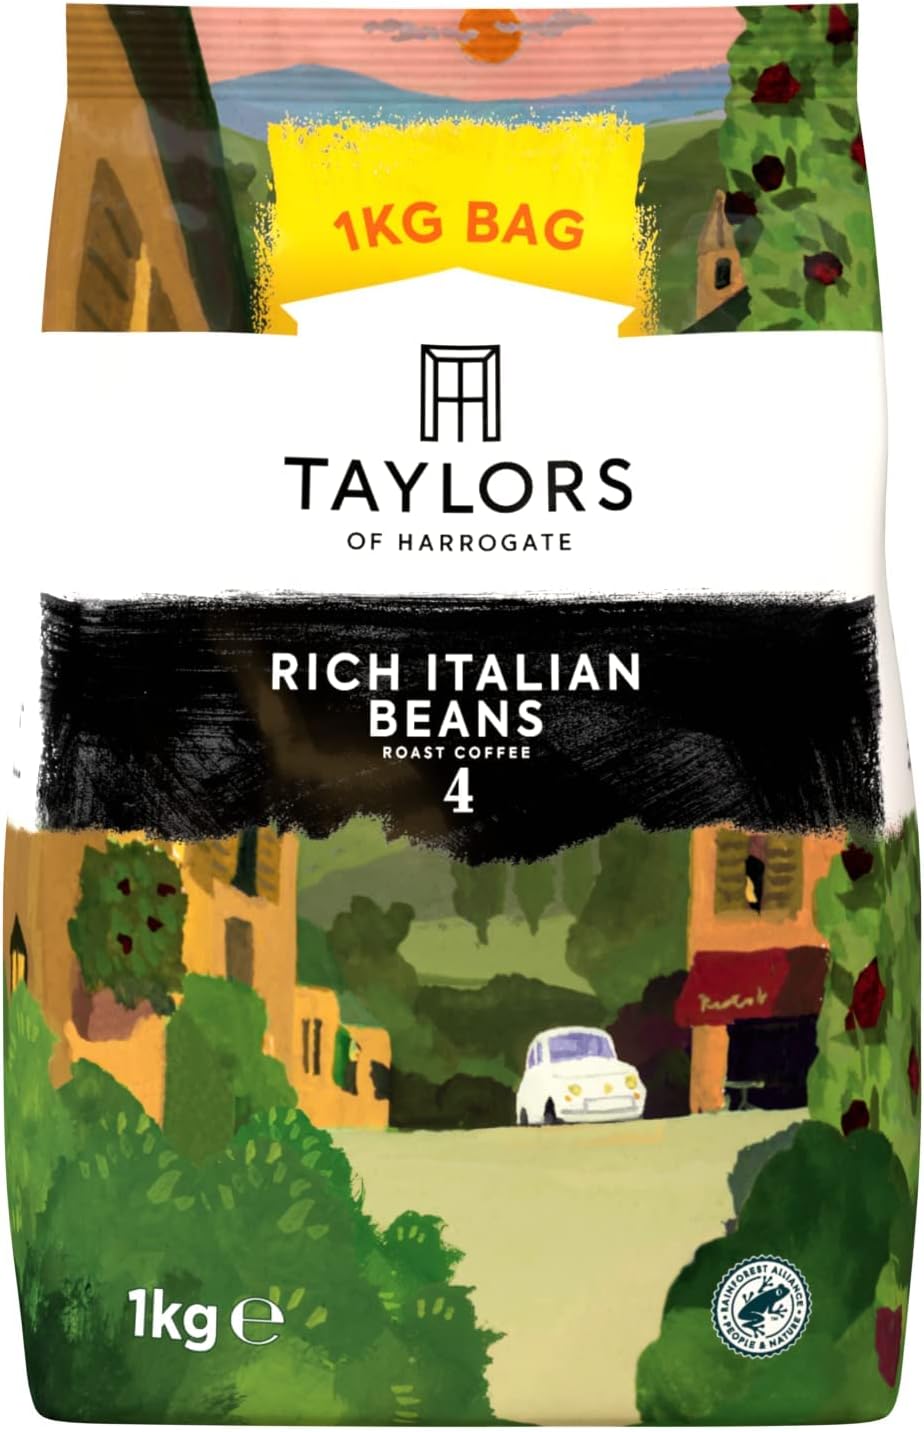 Taylors of Harrogate Rich Italian Coffee Beans 1kg‚ 